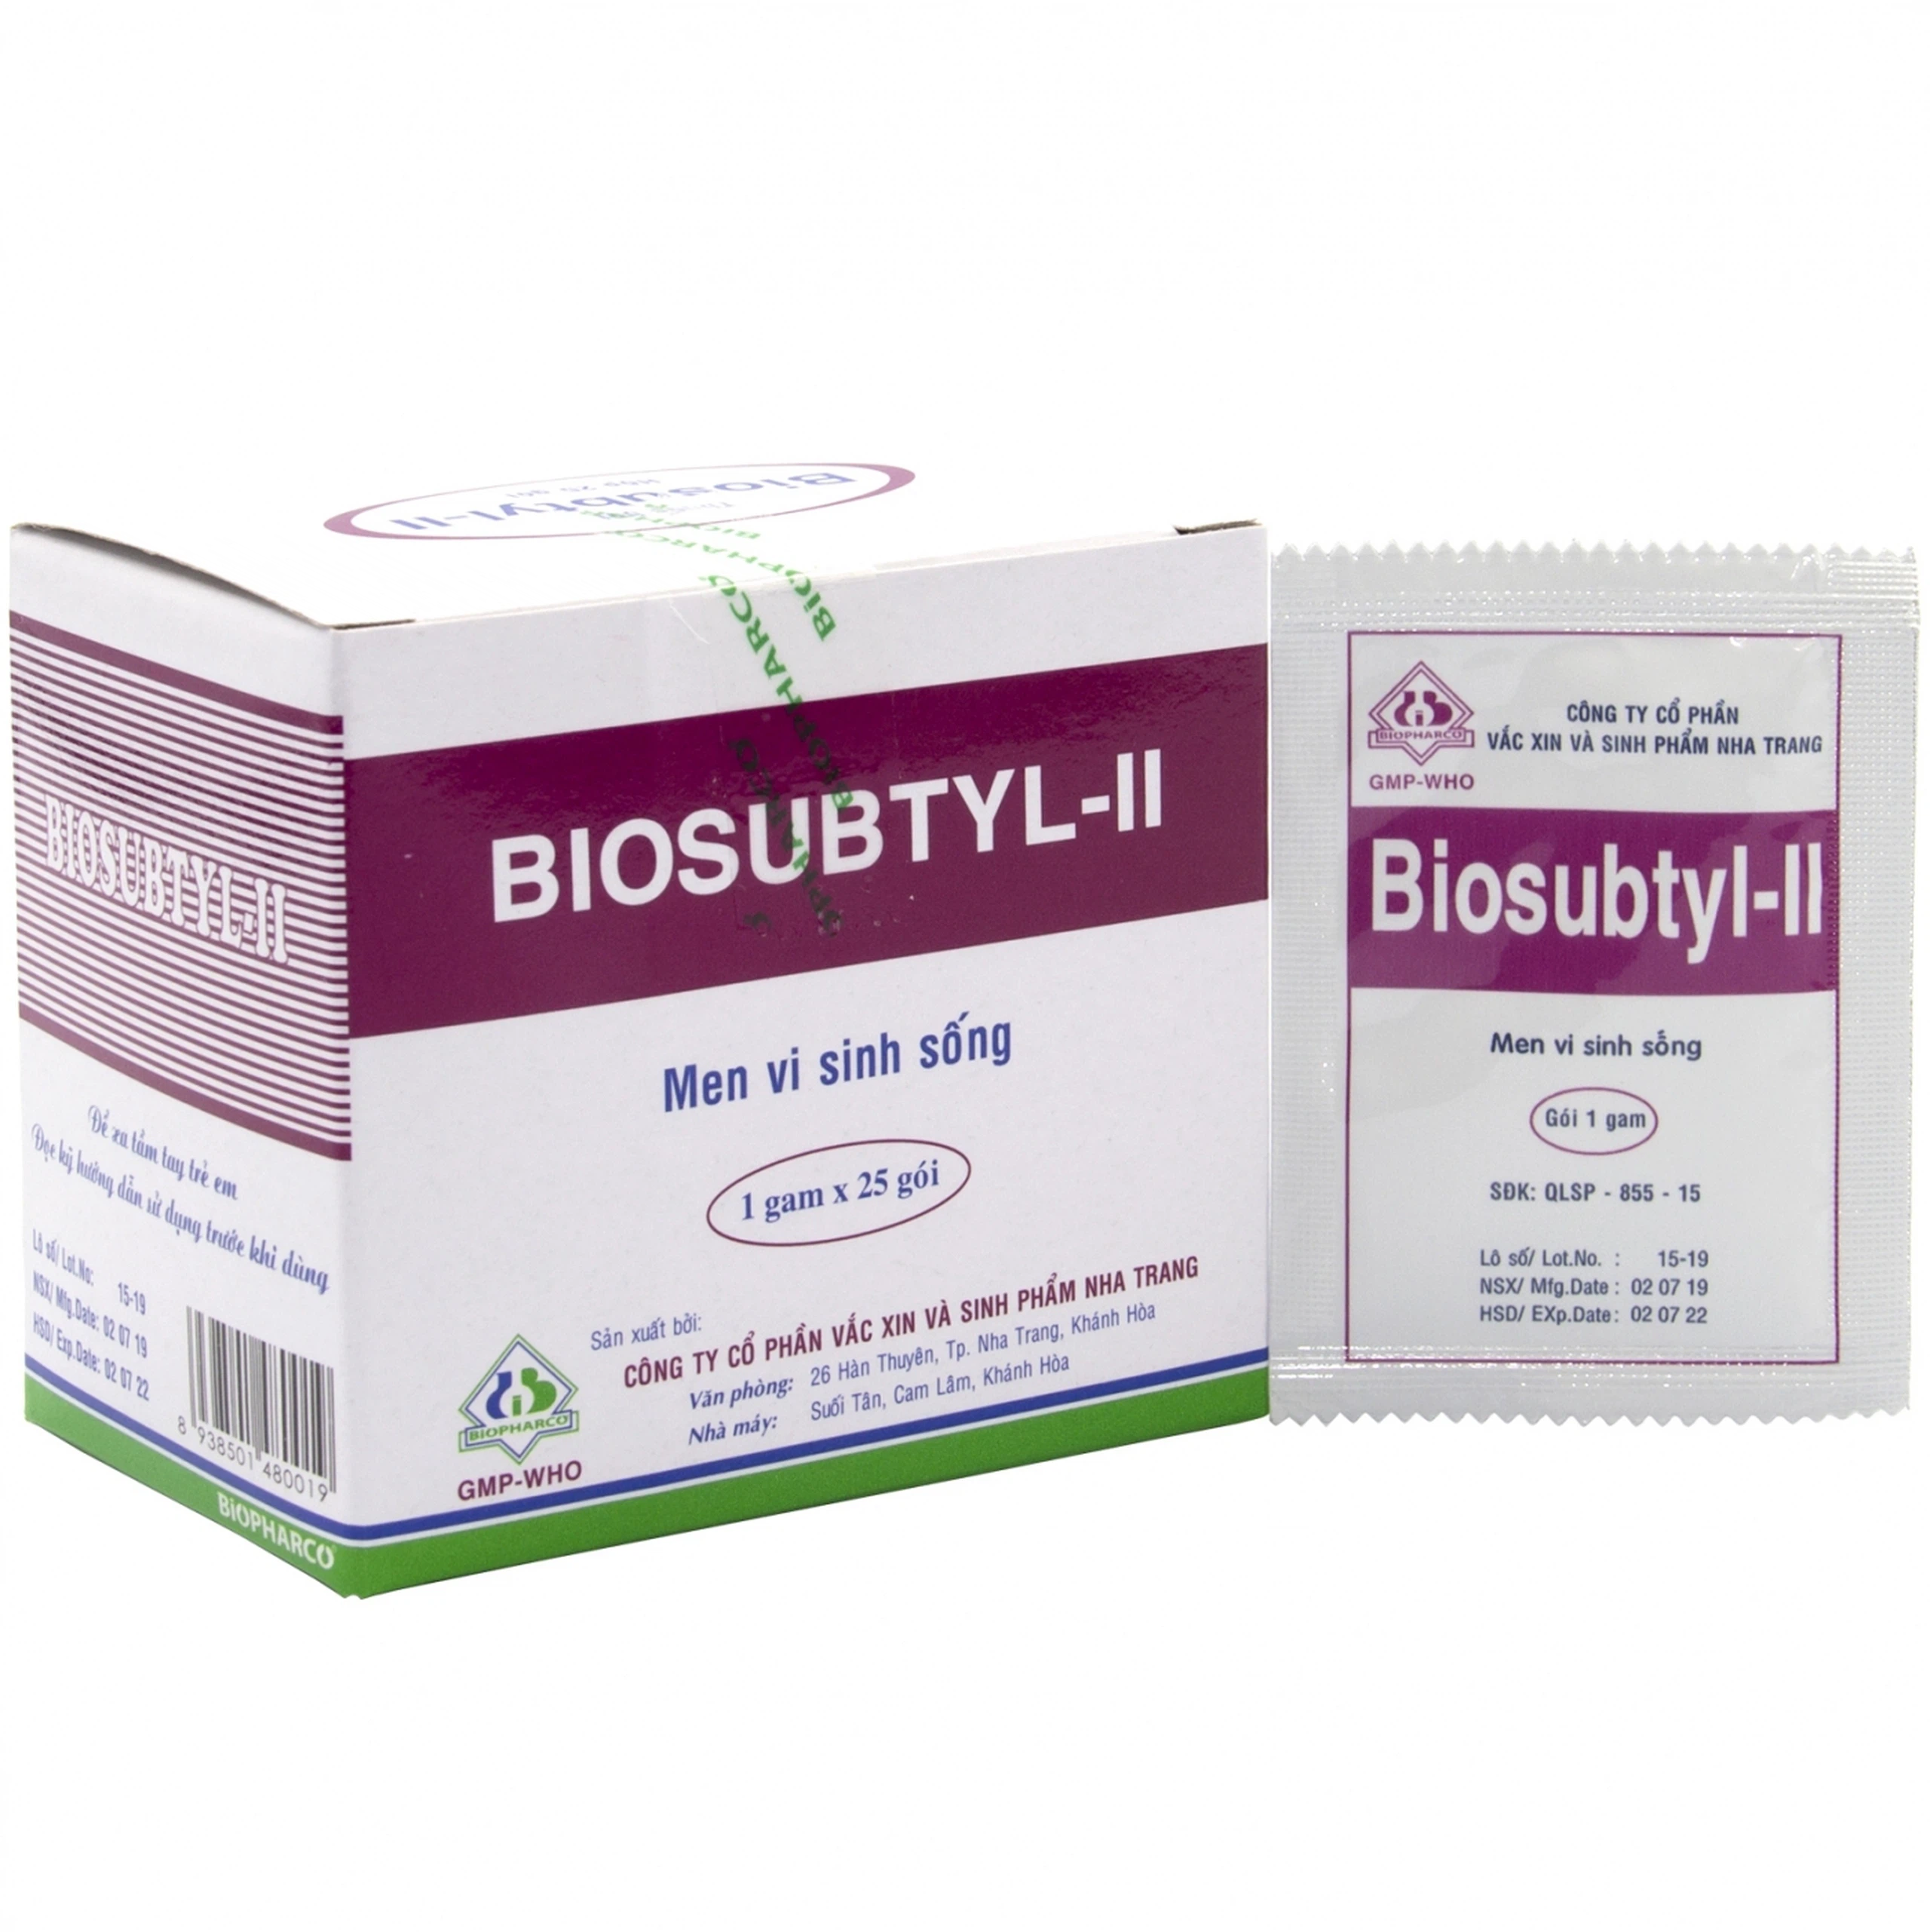 Men tiêu hoá sống Biosubtyl-II điều trị tiêu chảy, viêm đại tràng, rối loạn tiêu hoá (25 gói x 1g)